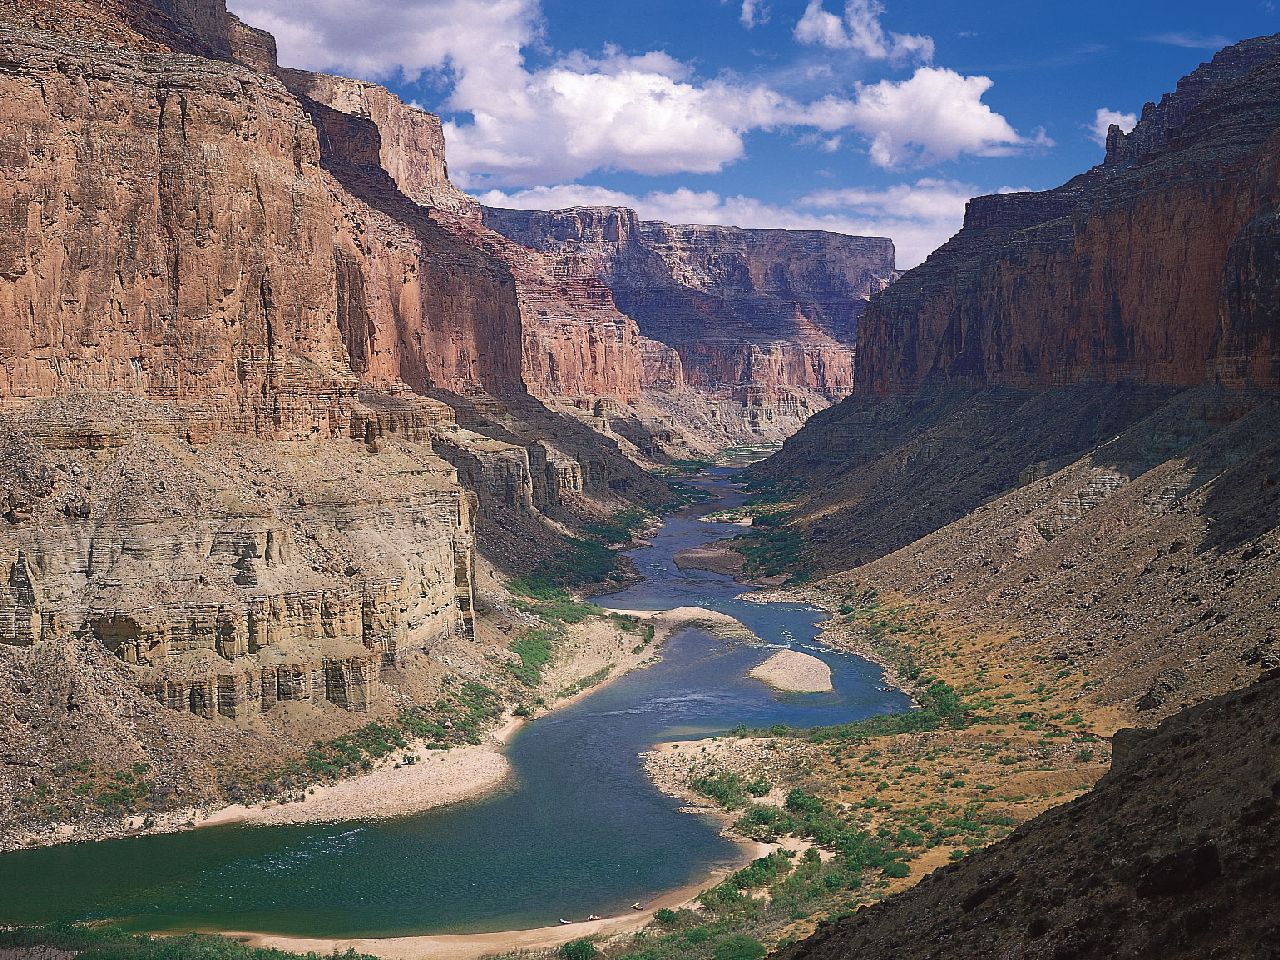 Grand Canyon National Park w Arizionie